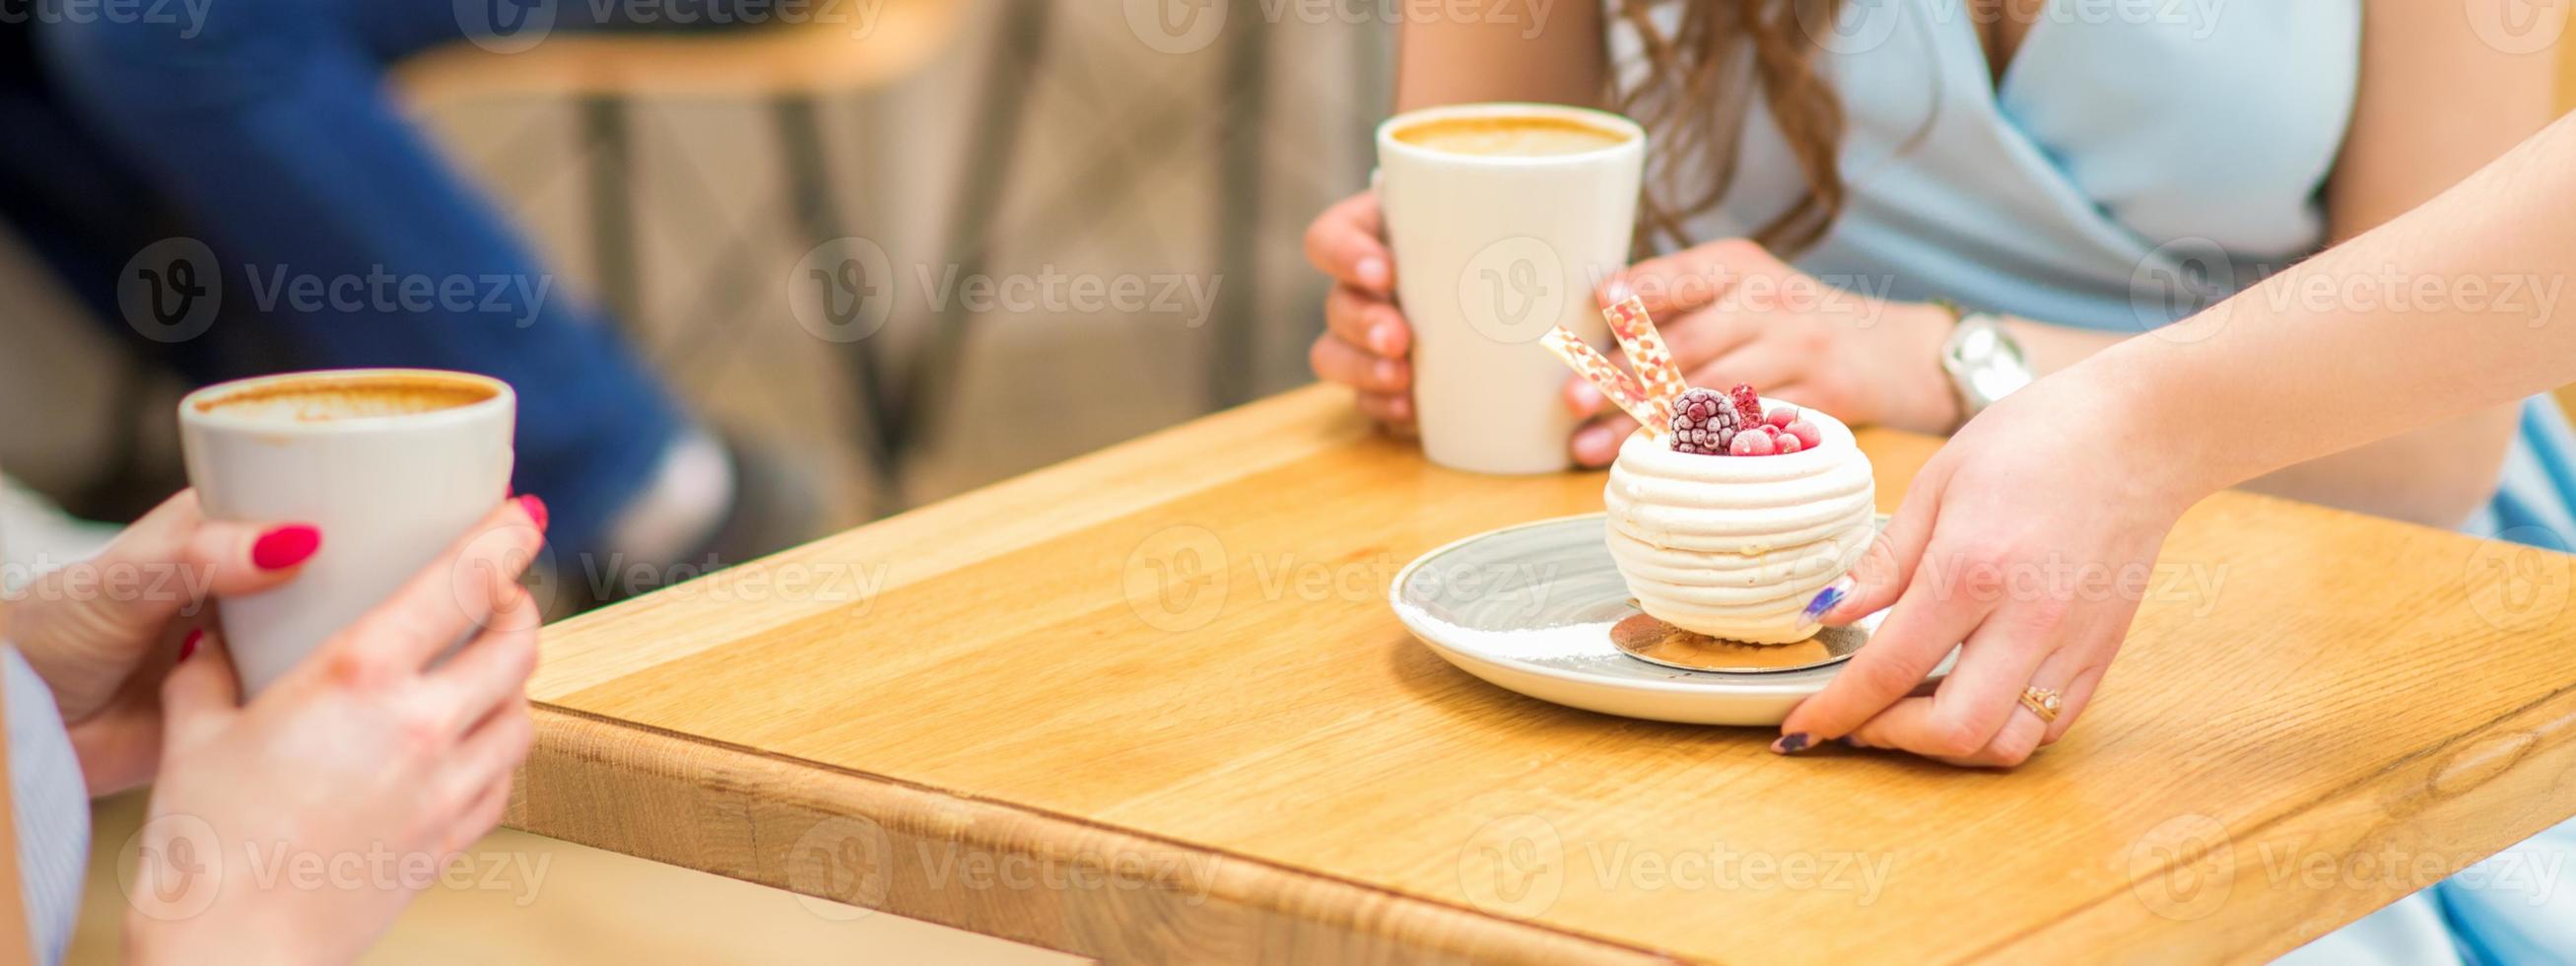 garçonete coloca pastelaria em mesa foto